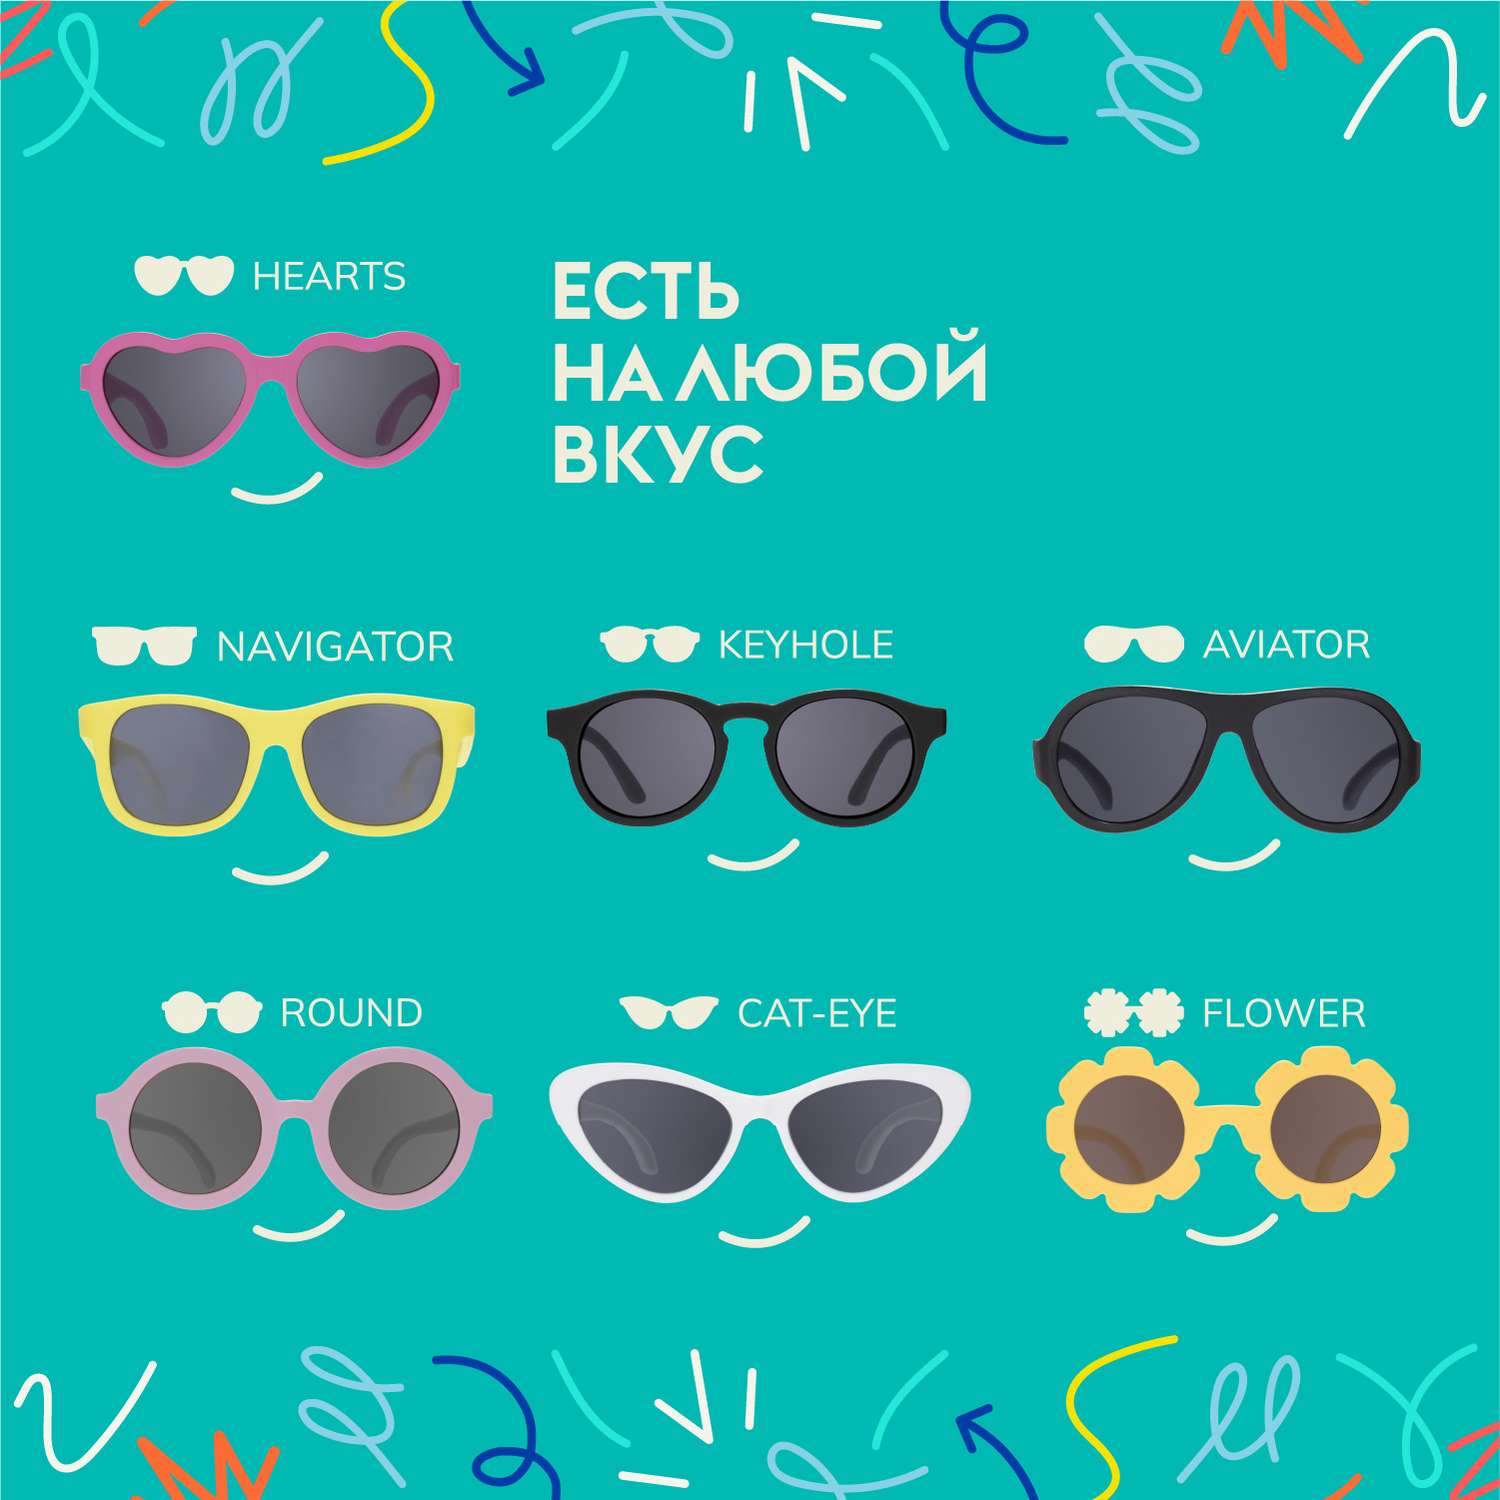 Солнцезащитные очки 0-2 Babiators HRT-015 - фото 7